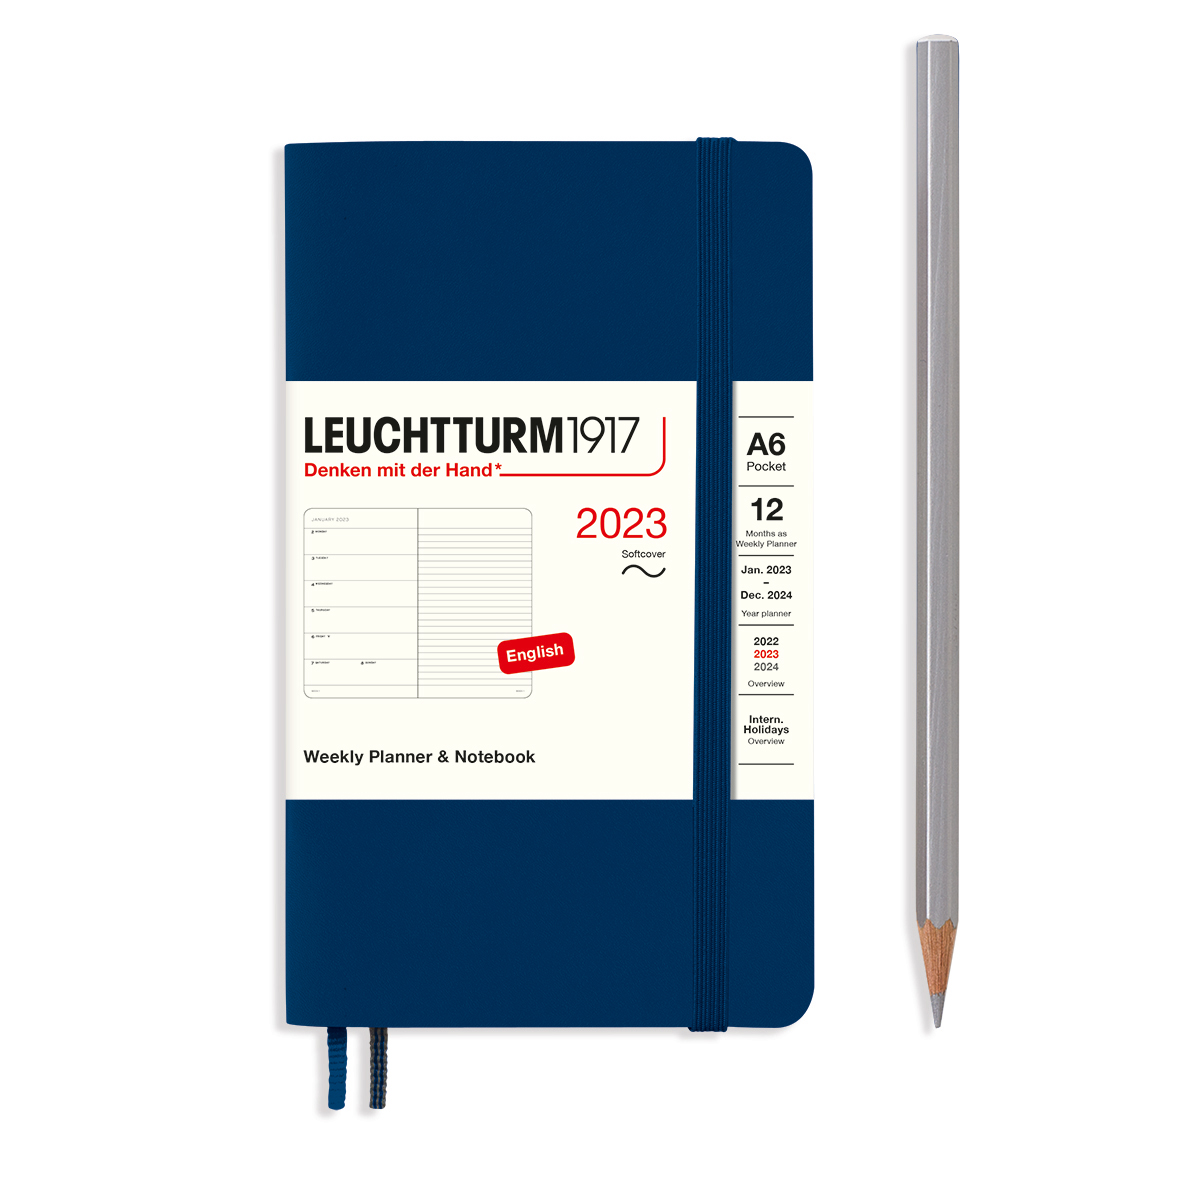 Еженедельник датир. Leuchtturm1917 Pocket A6 на 2023г, 72л, м. обл, цвет: Синий Неви Lecht-365928 - фото 1